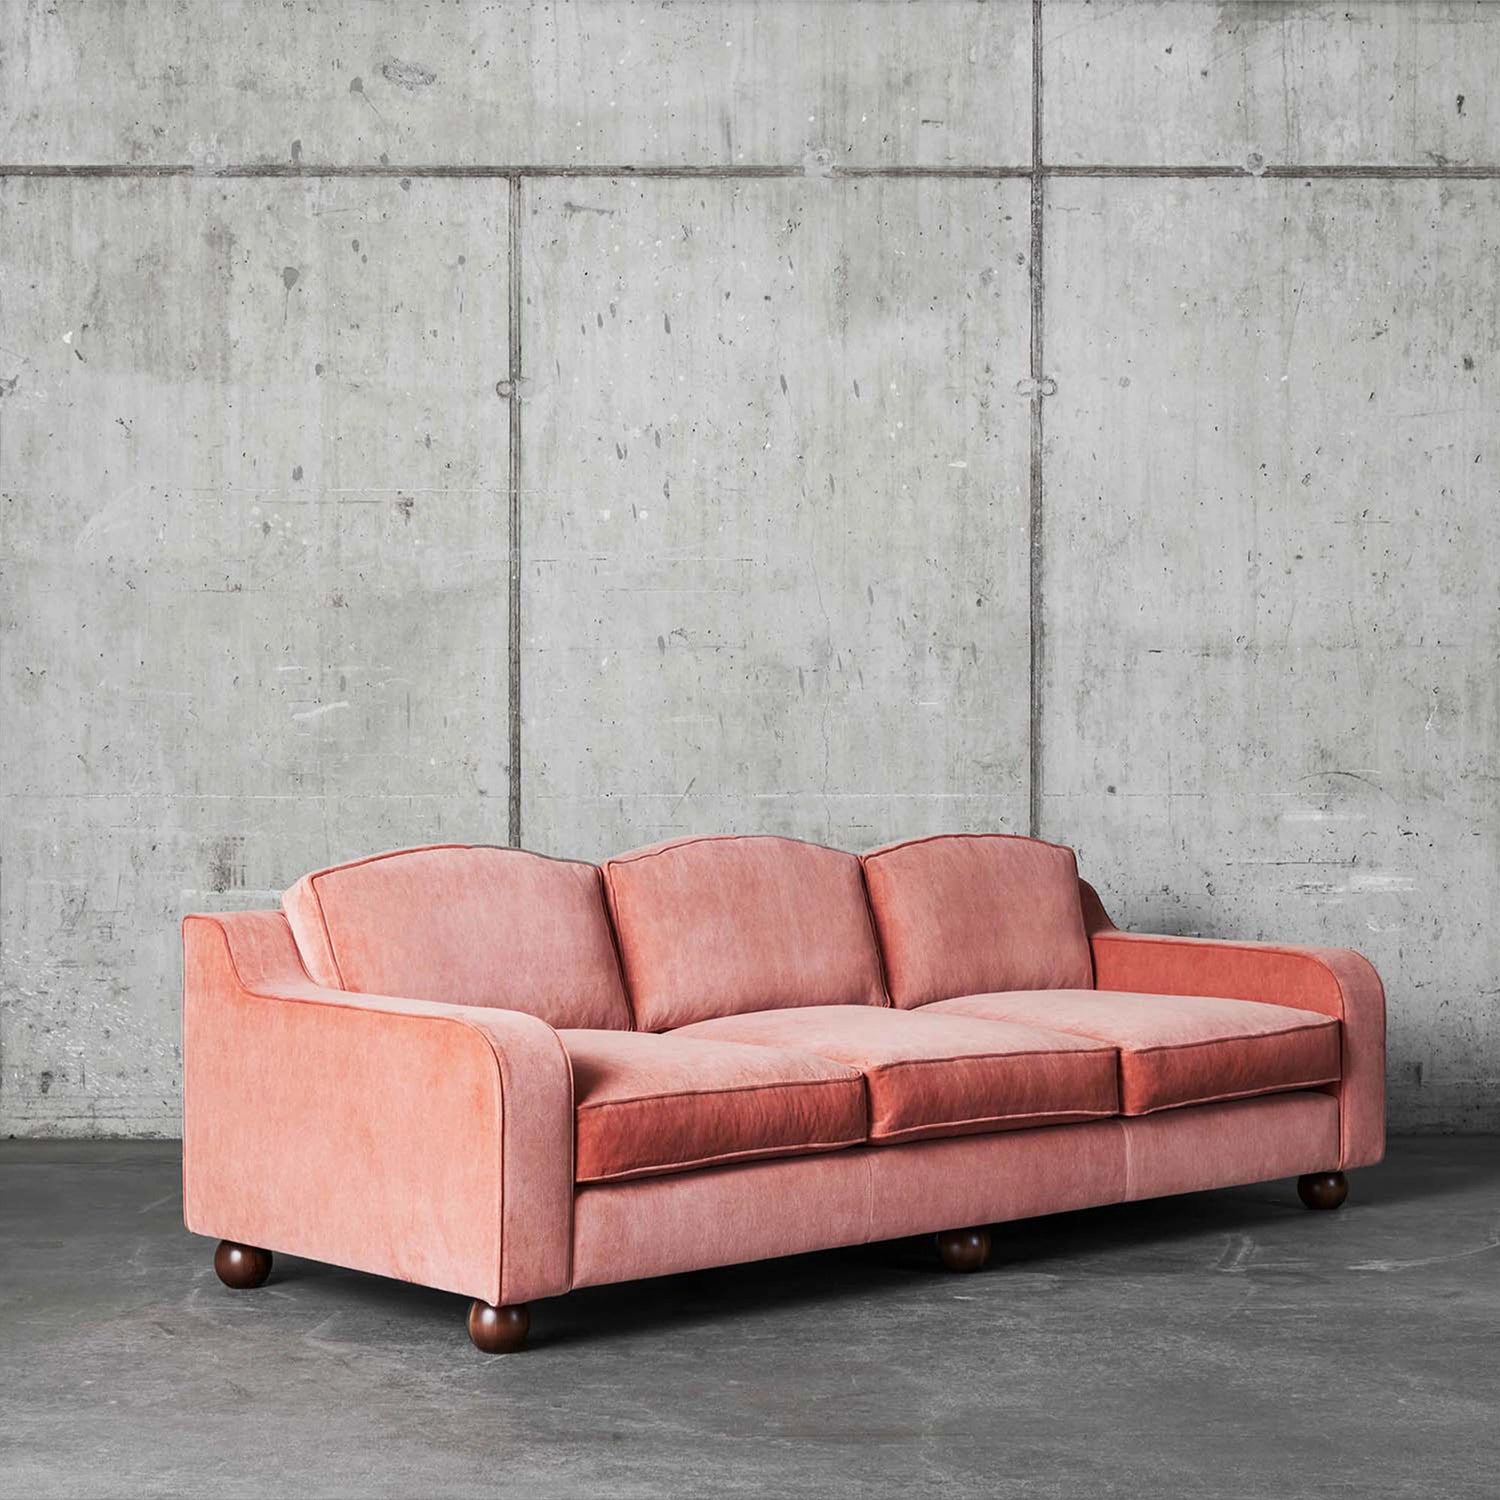 Bilde av den rosa sofaen Lola i fargen Velvet Vintage Pink fra Dusty Deco mot rå betongvegger. Sofaen har mørkebrune ben. 